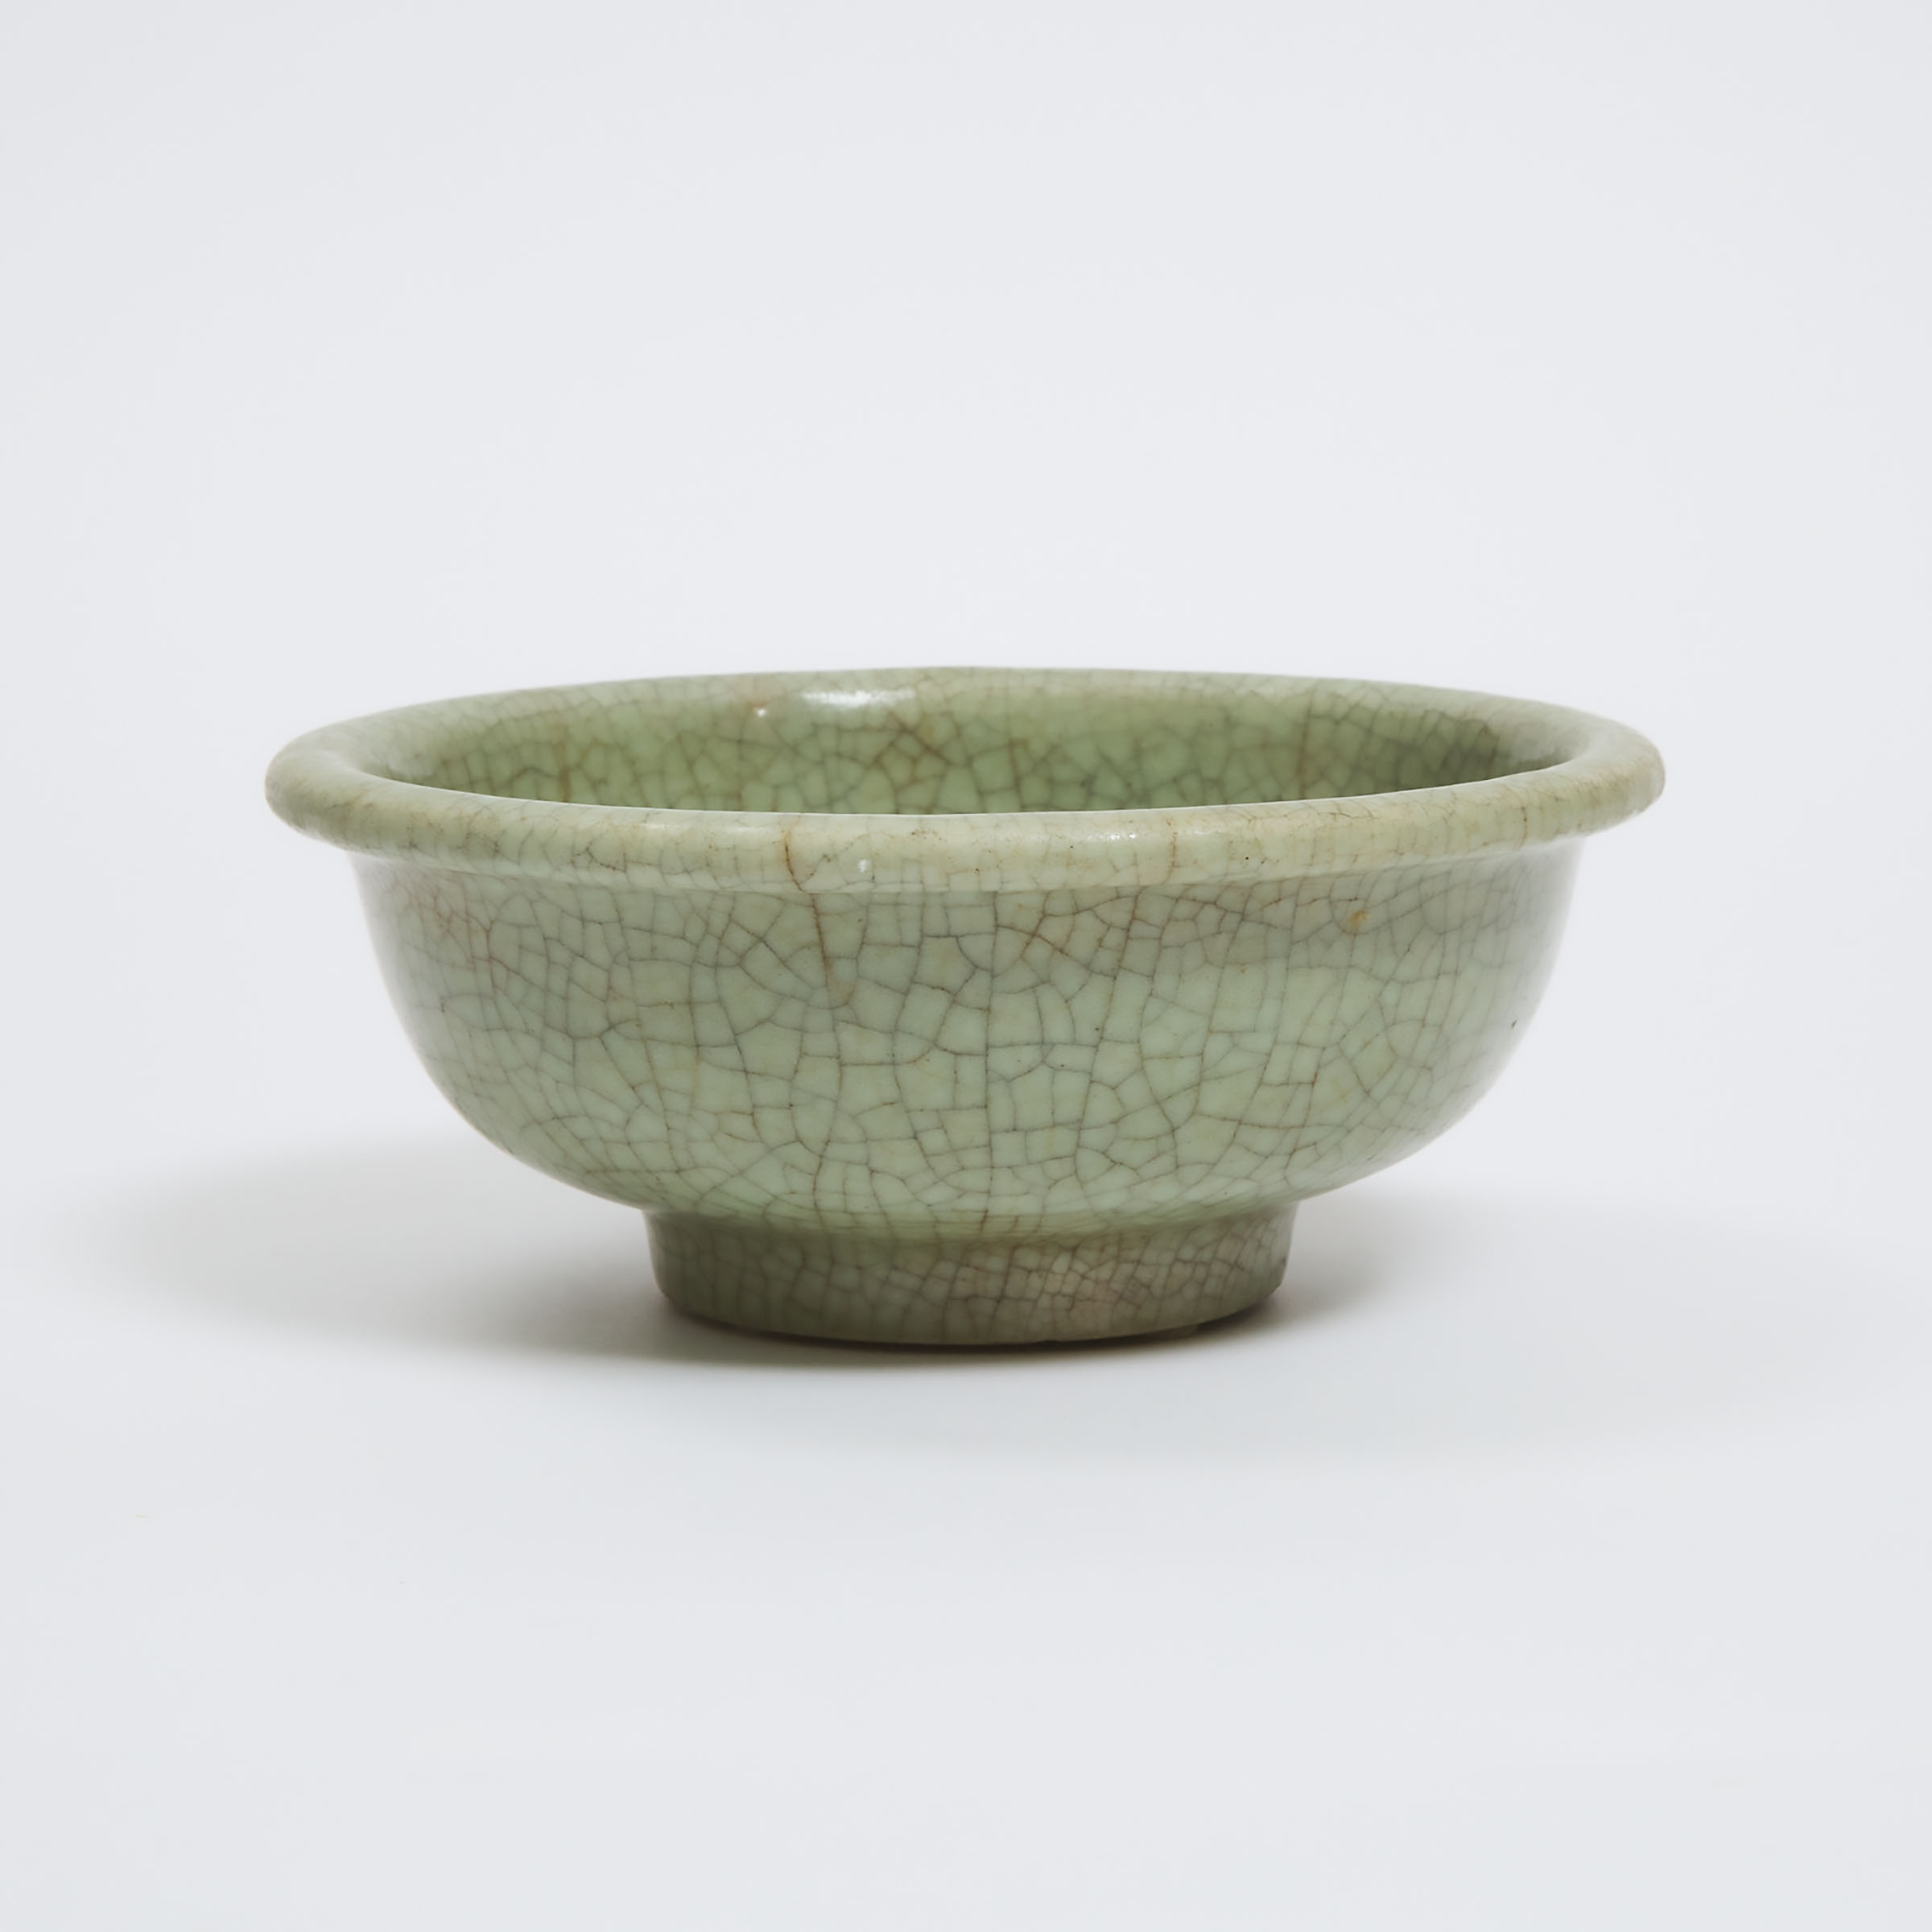 A Celadon Crackled Glaze Bowl,